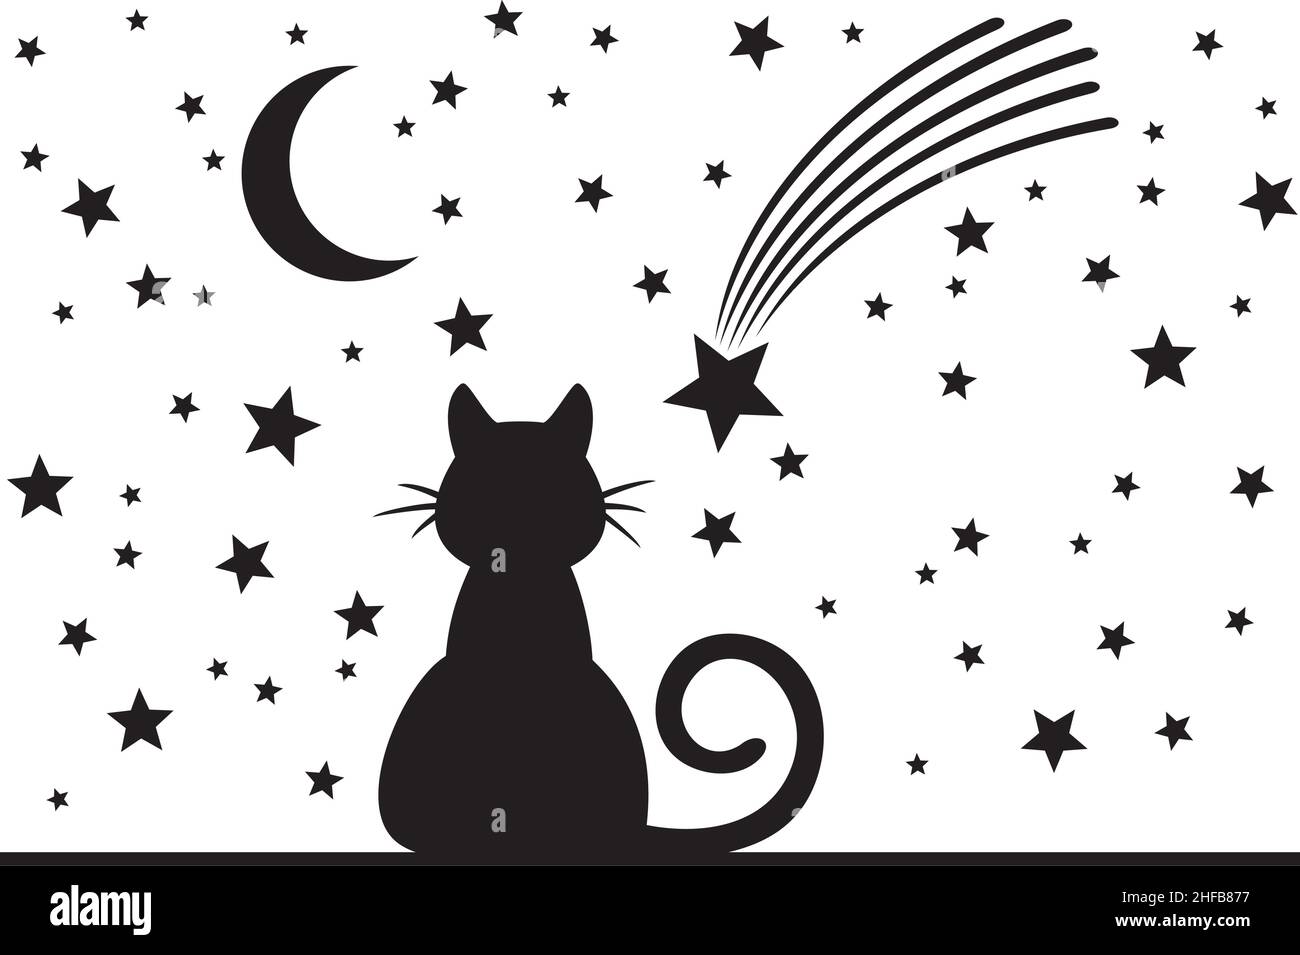 Katze, Mond und Sterne schwarz und weiß. Vektorgrafik. Stock Vektor